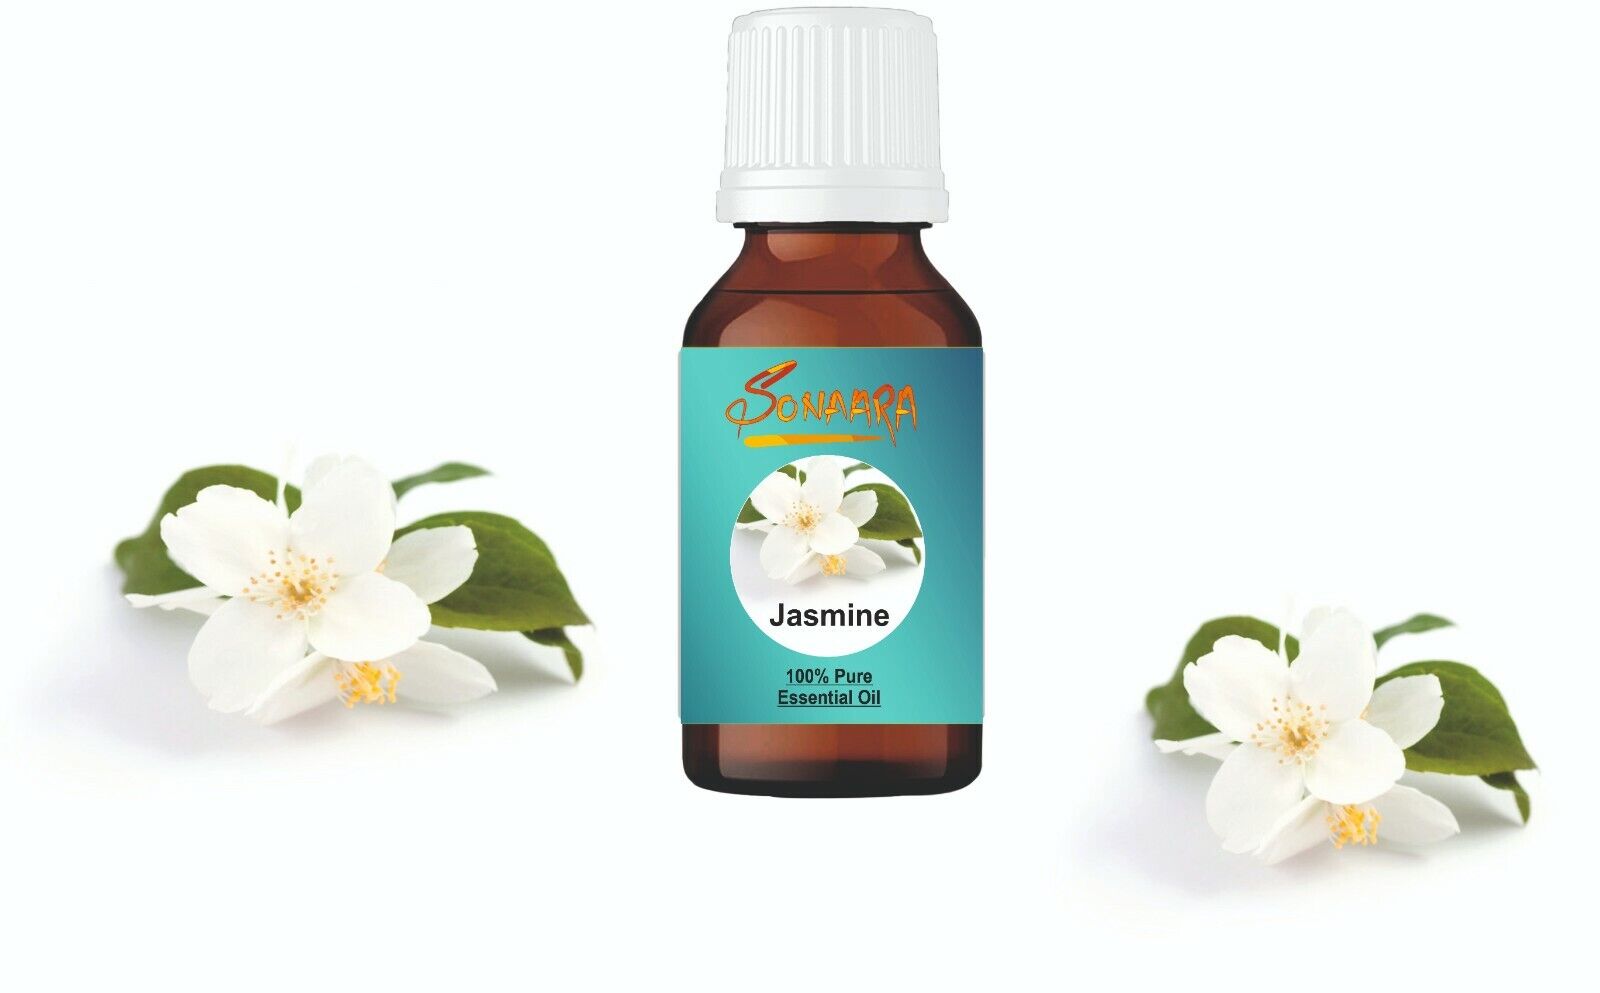 Jasmine Essential Oil - 100% Pure and Natural - Premium Therapeutic Grade 